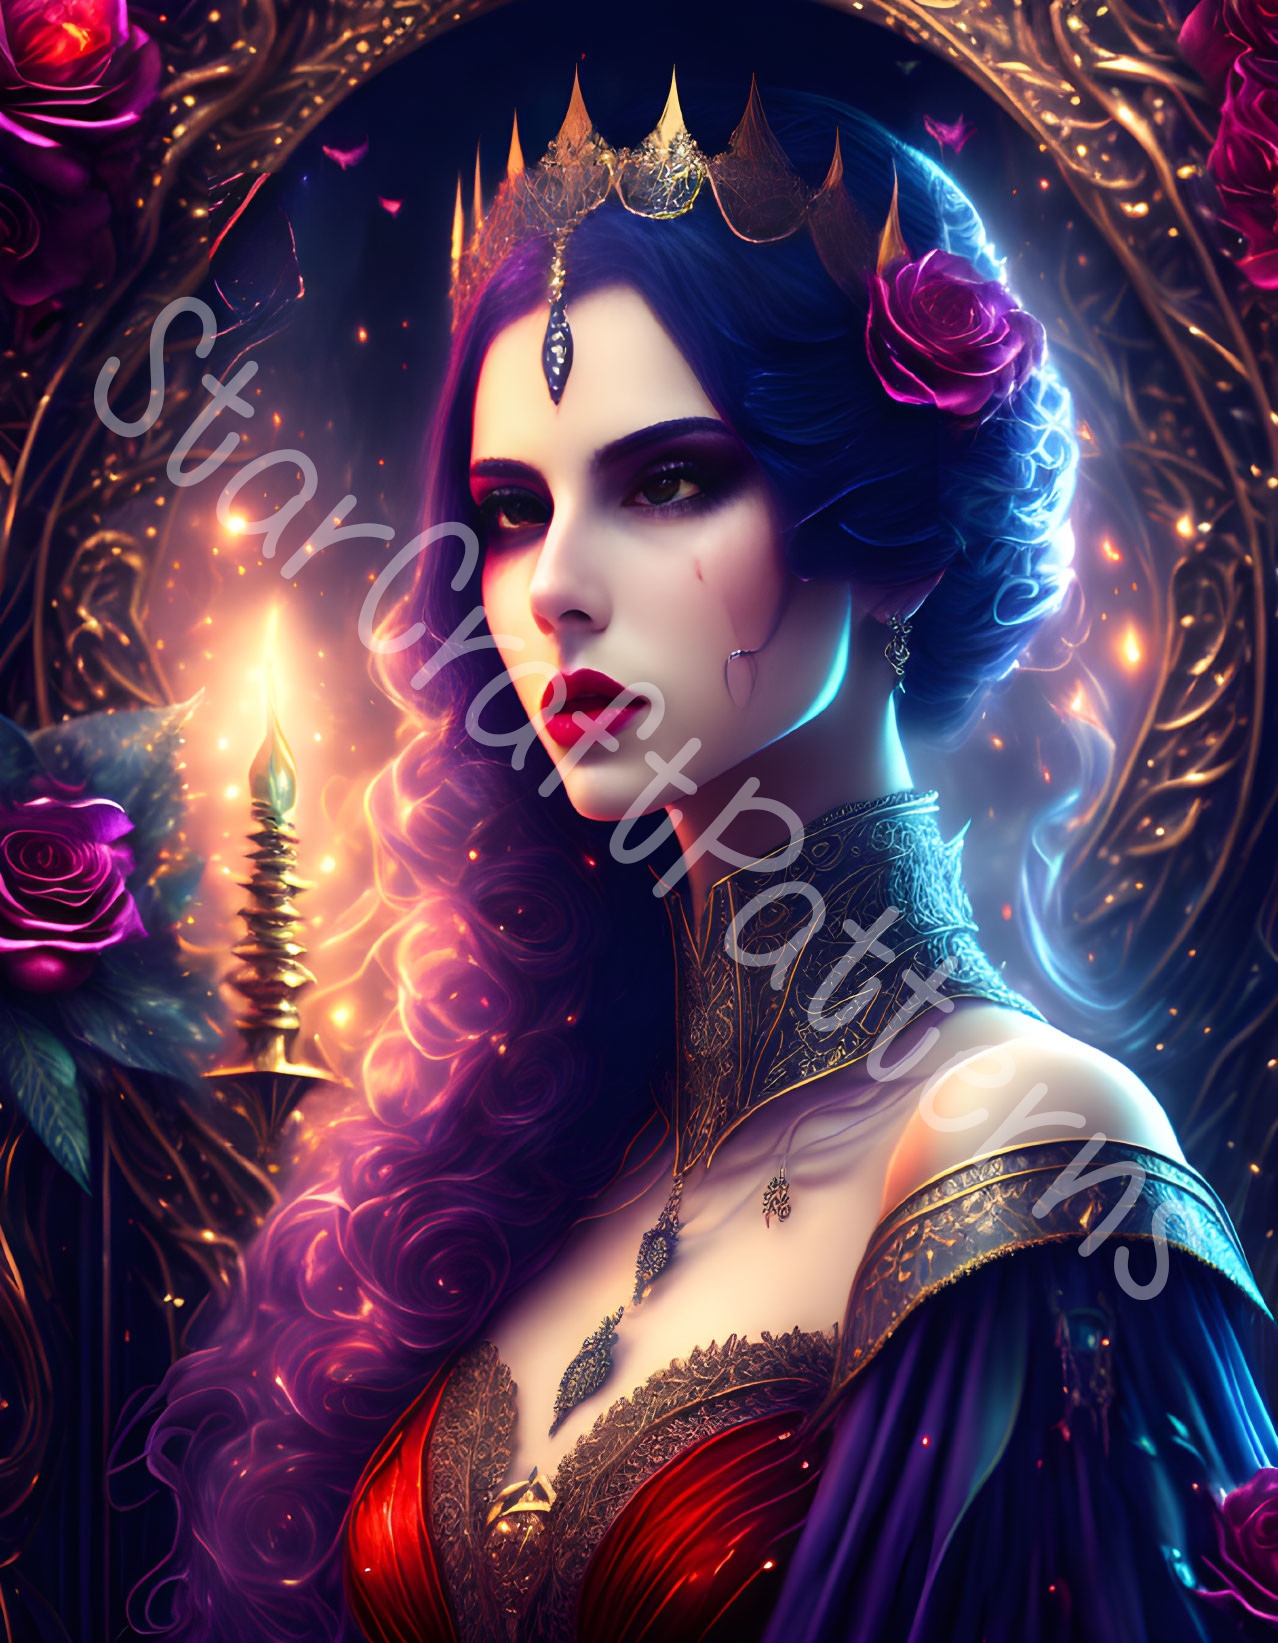 Queen of the Underworld by StarCraftPatterns on DeviantArt